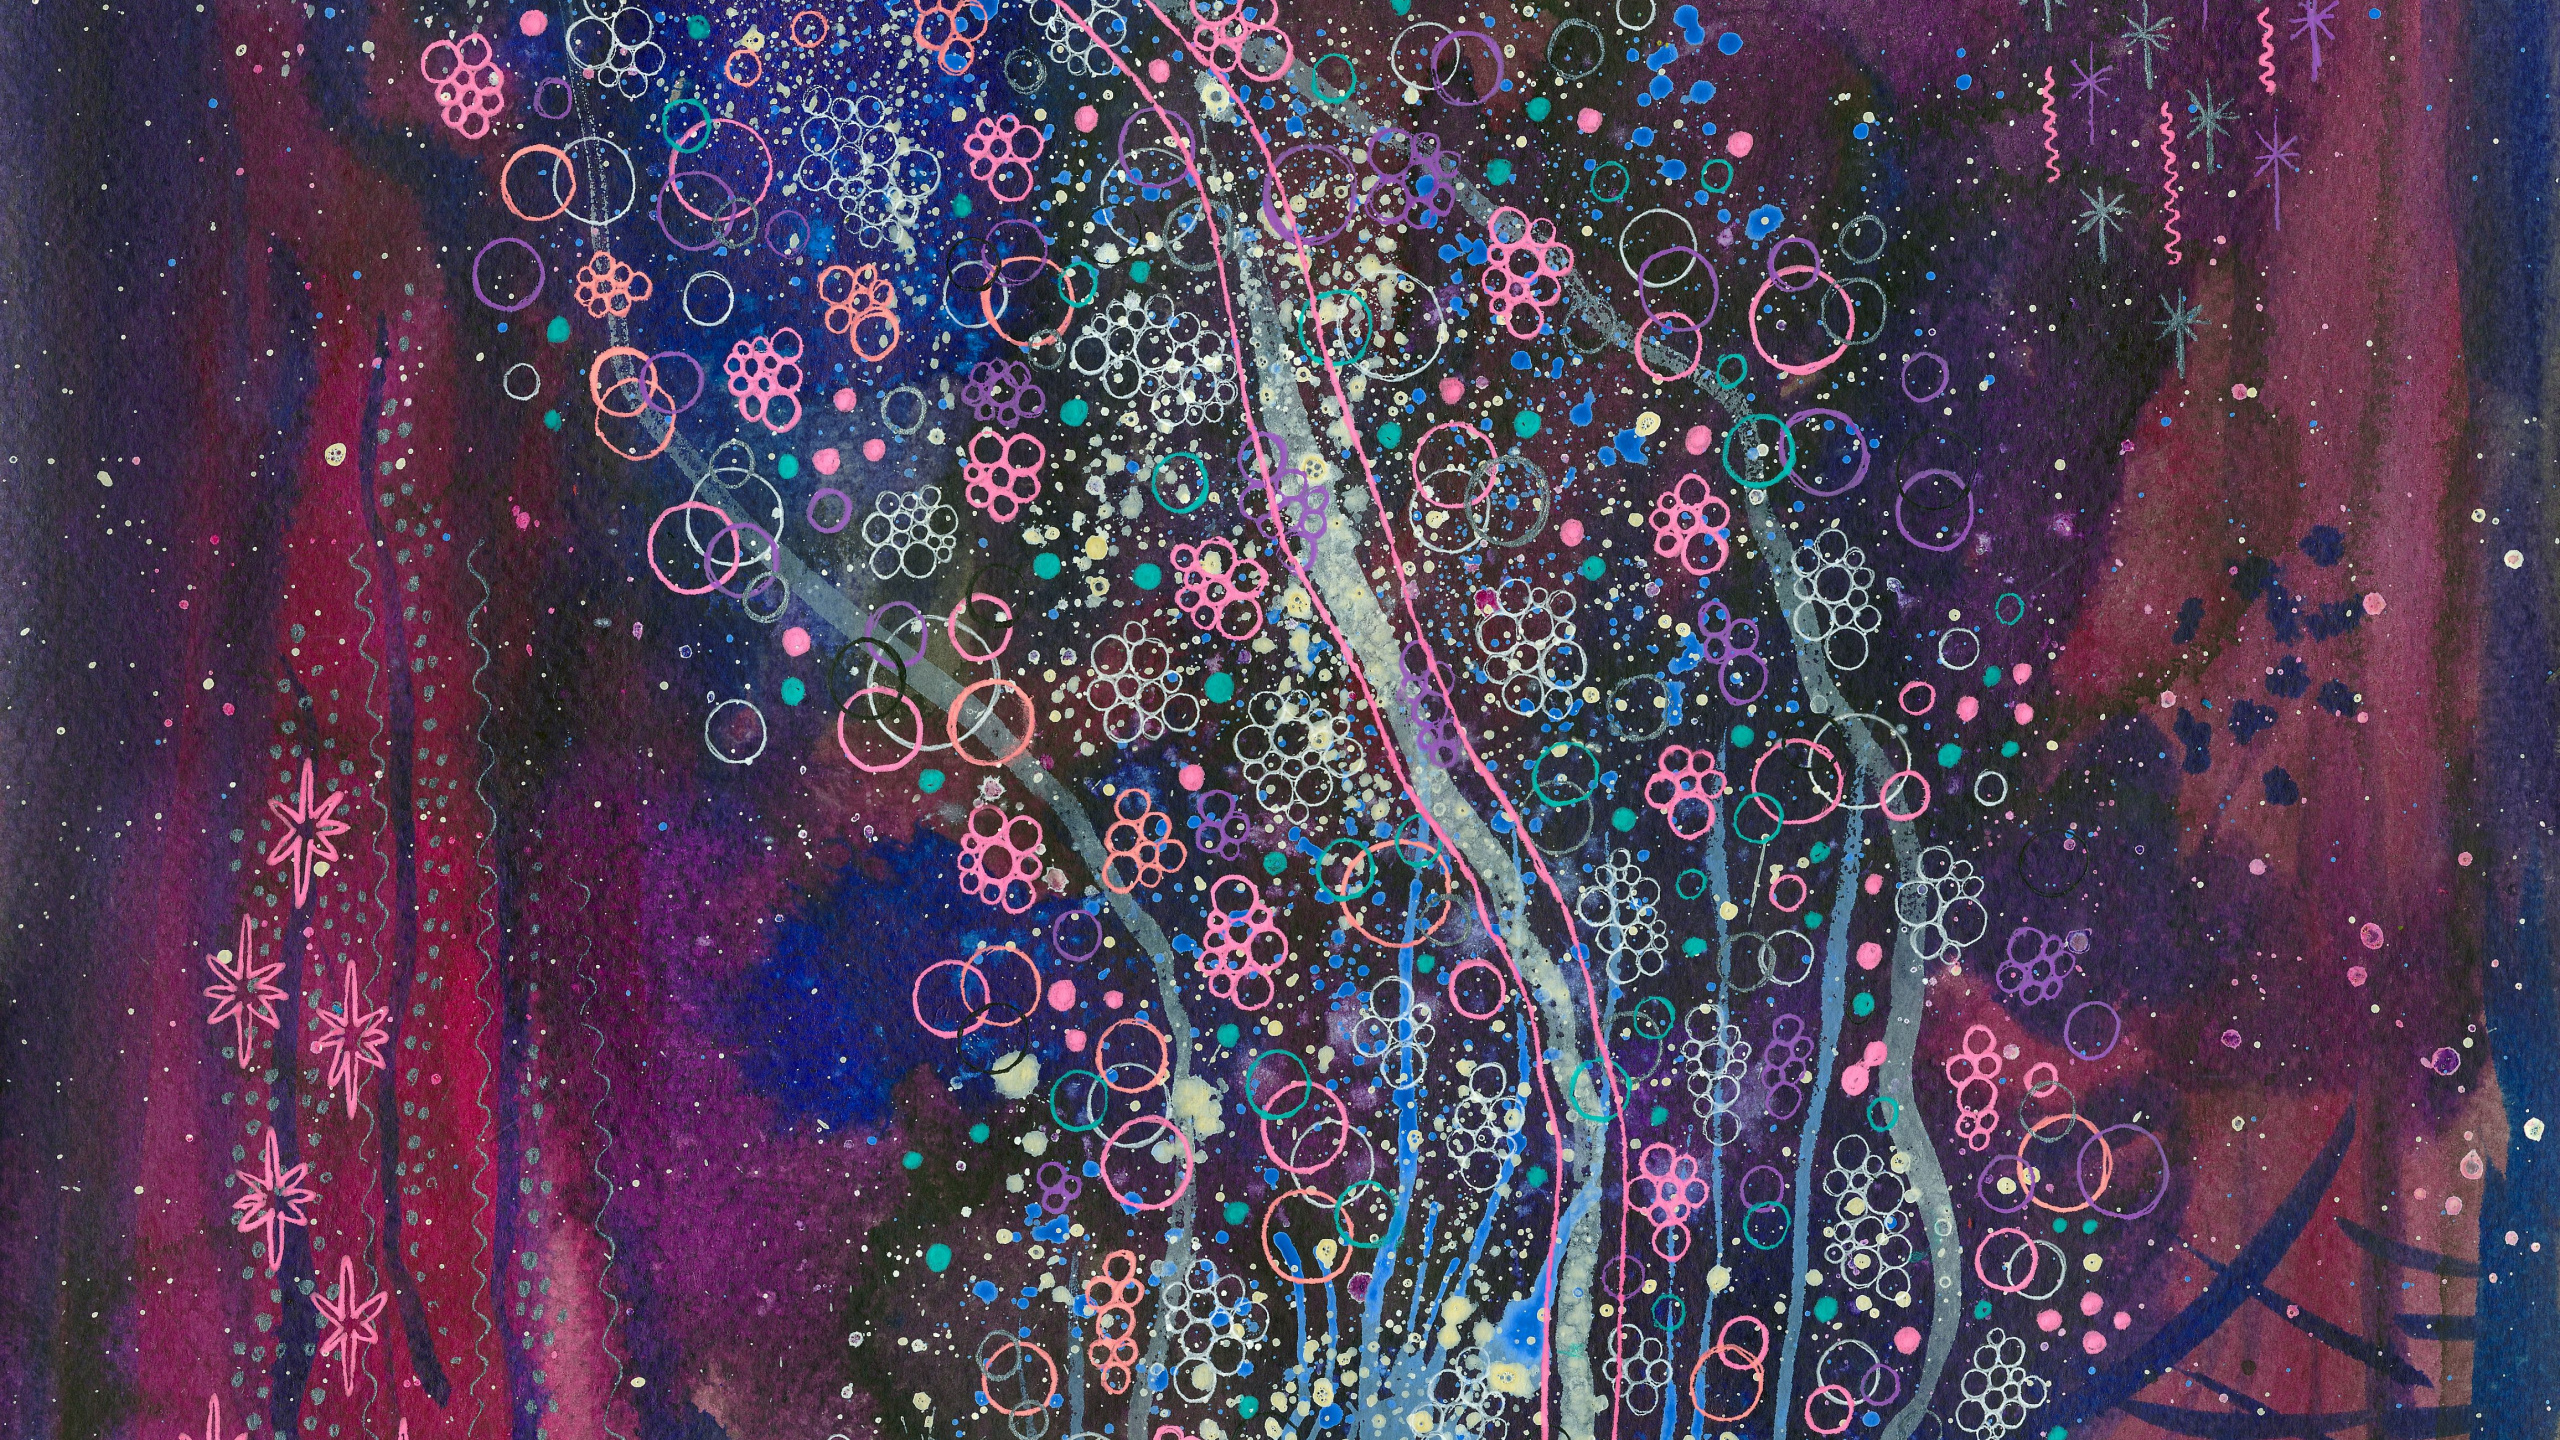 水彩画, 丙烯酸涂料, 紫色的, 现代艺术, 紫罗兰色 壁纸 2560x1440 允许